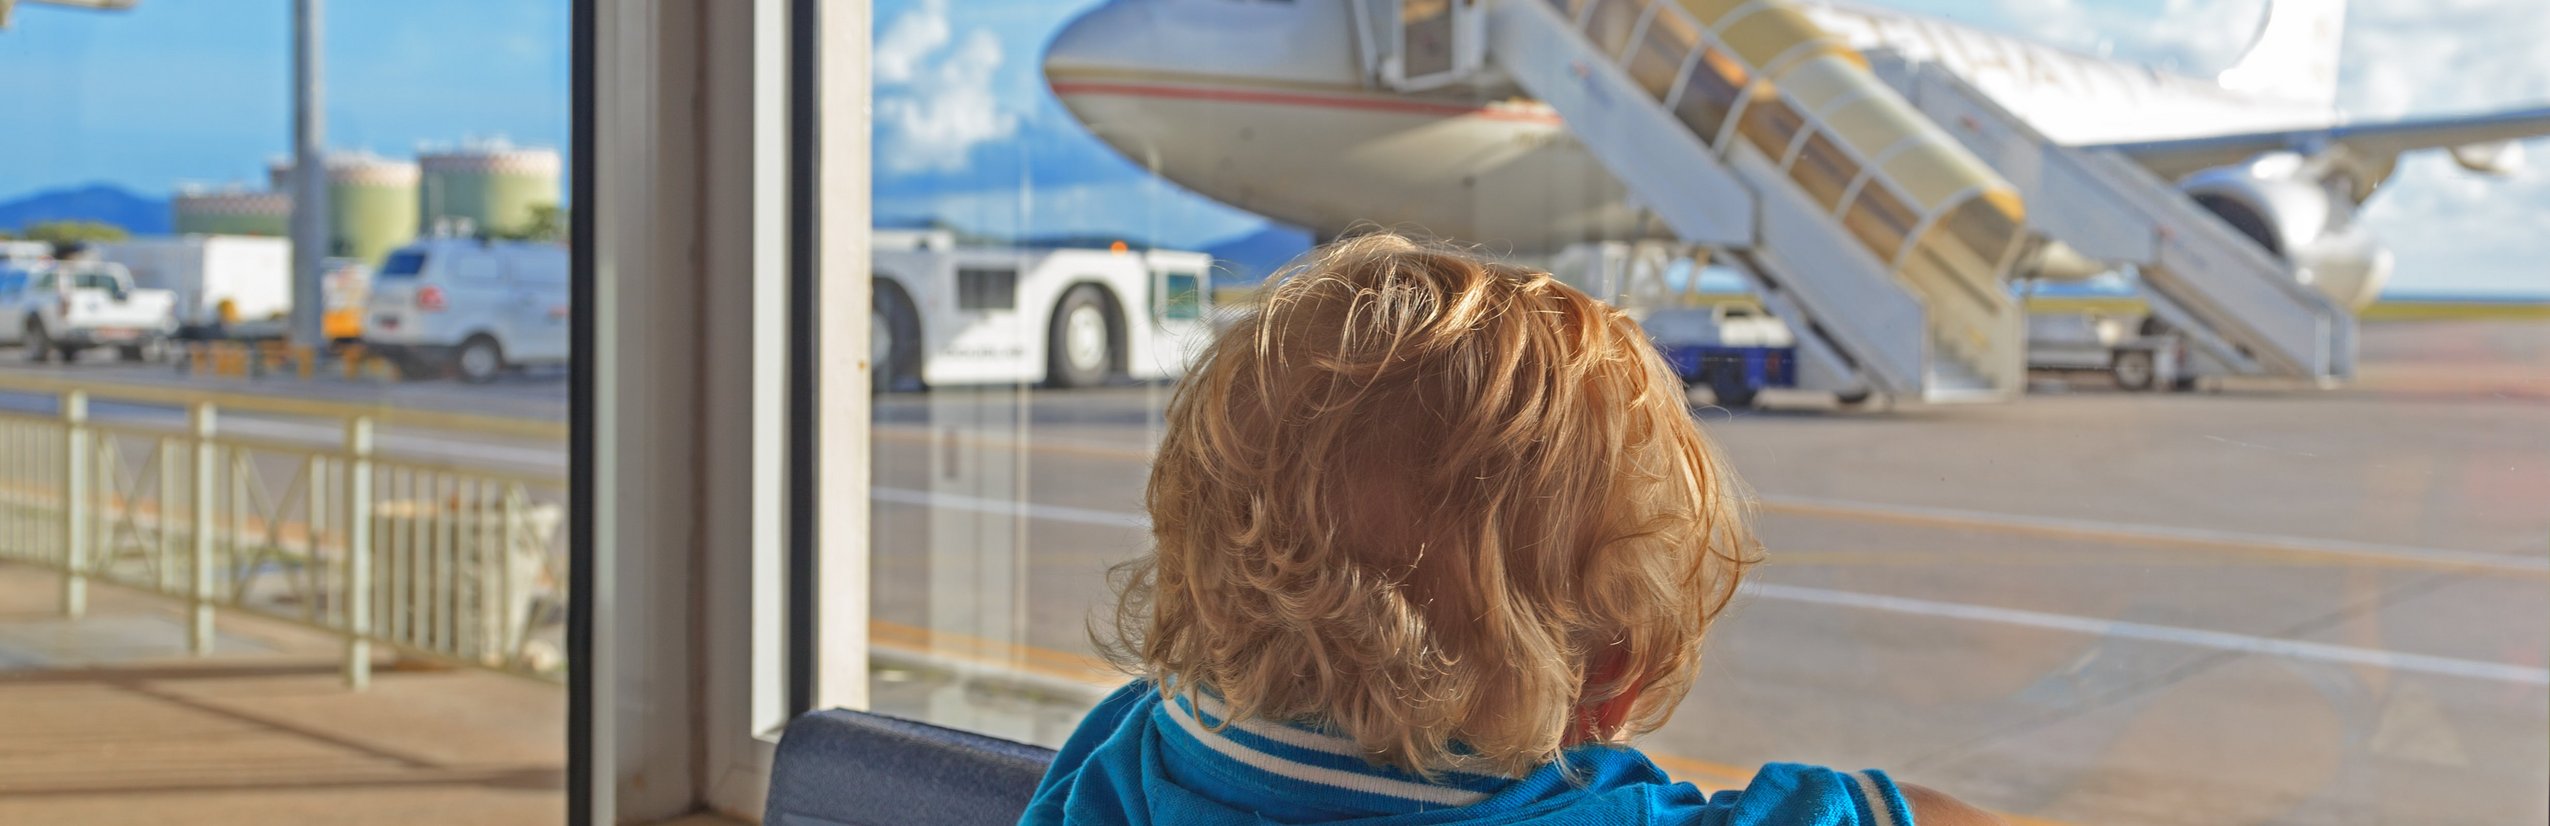 Checkliste Urlaub mit Kind - Packliste Urlaub Kinder - Checkliste von For Family Reisen